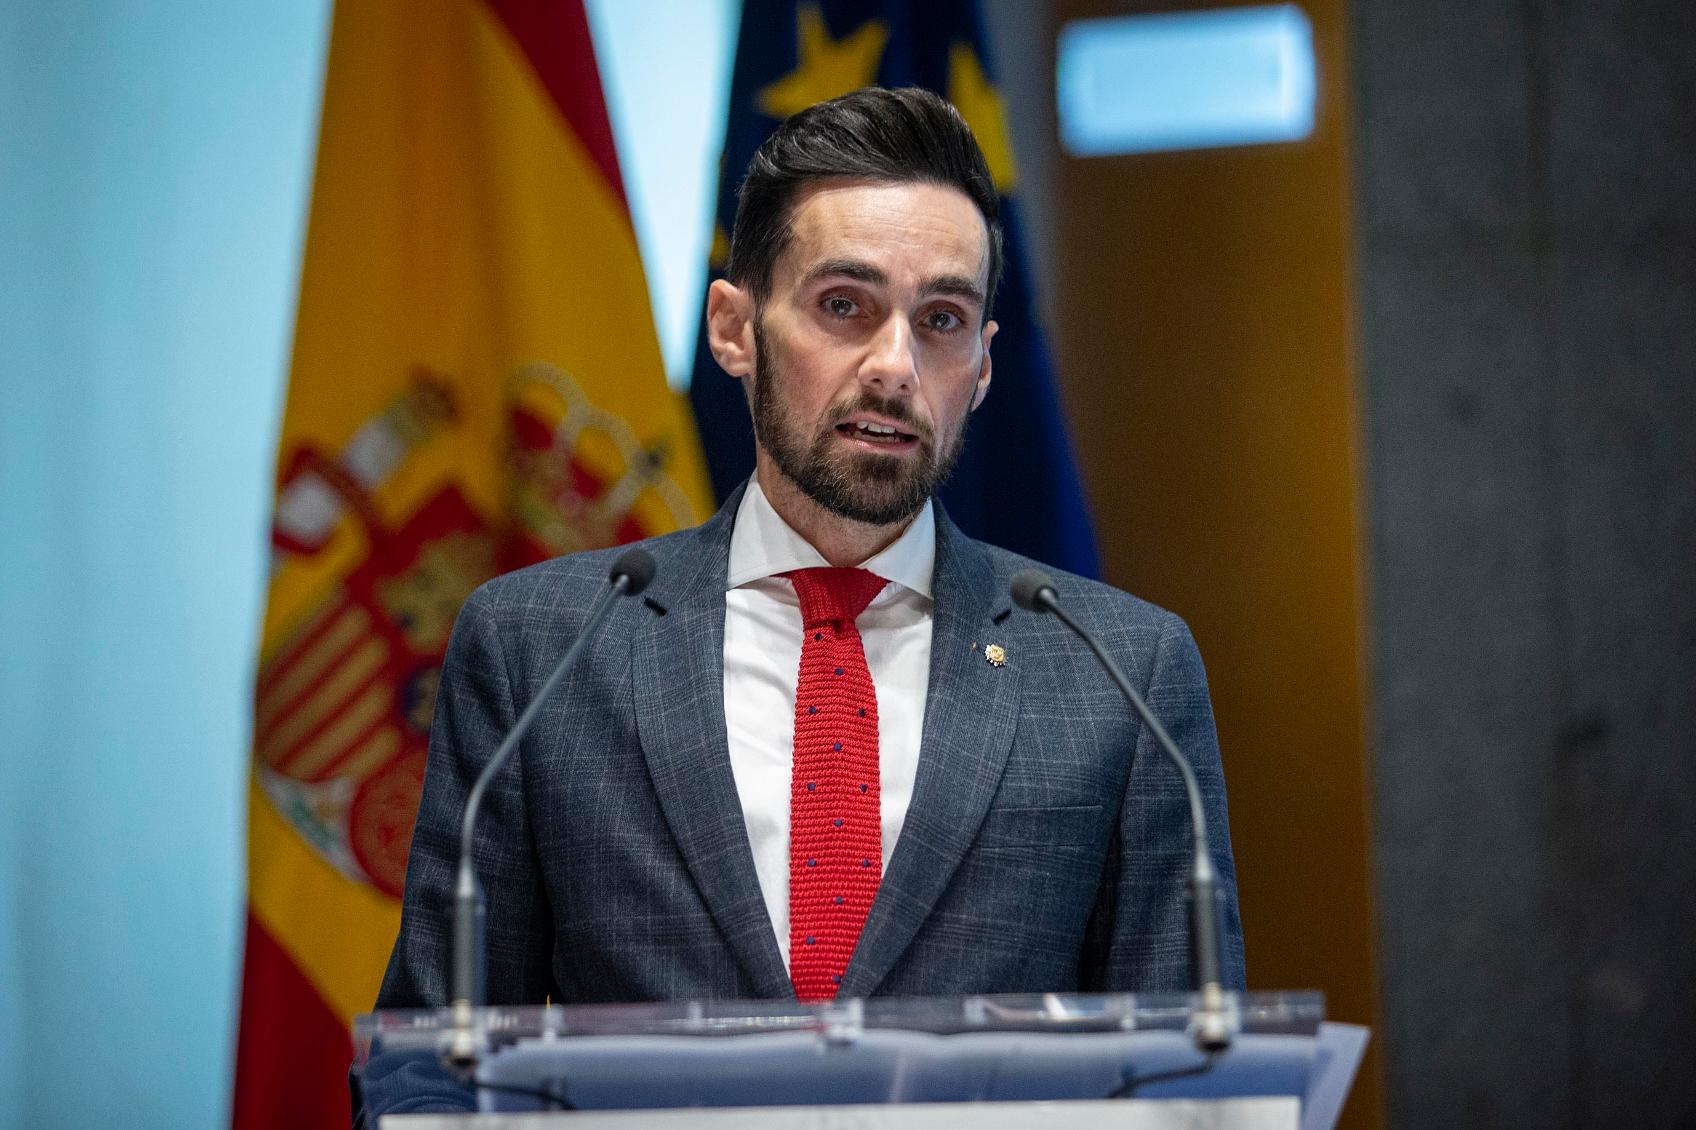 El secretario de Estado de Seguridad destaca “el liderazgo internacional” de España en la protección de infraestructuras críticas